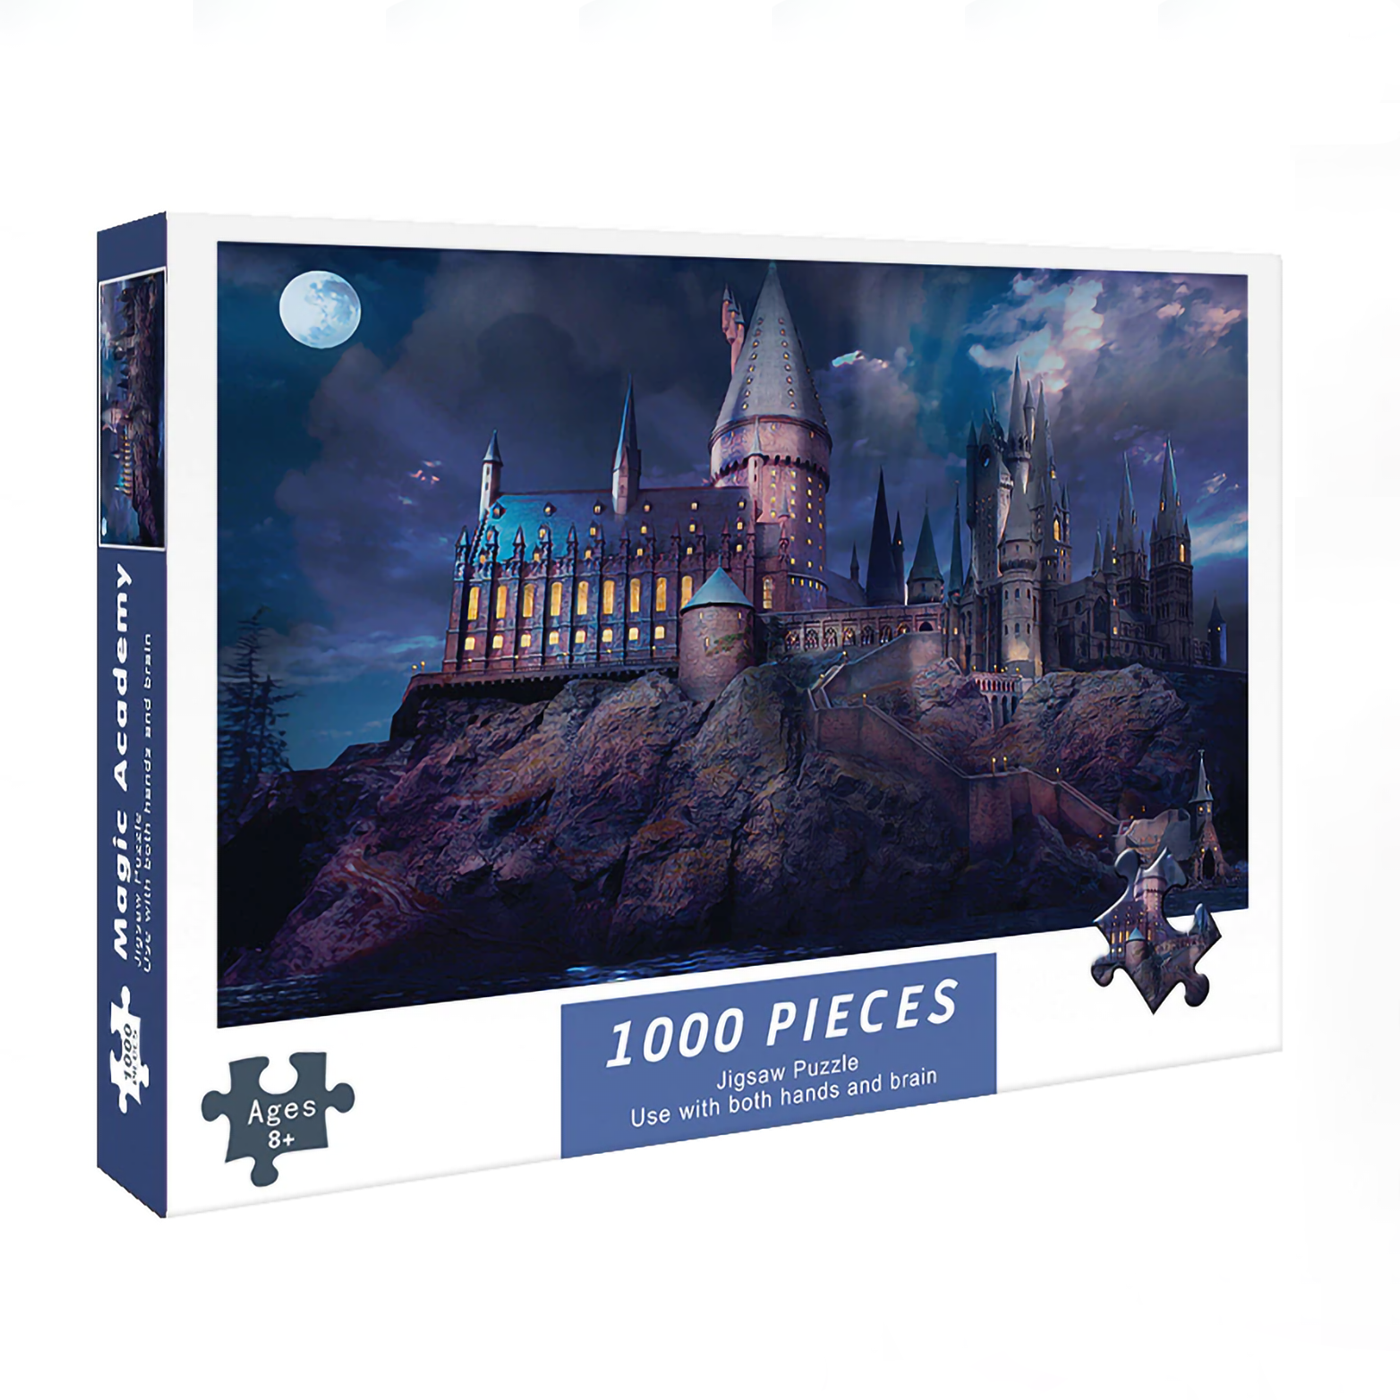 Quebra-cabeça 1000 peças paisagem castelo jogo de